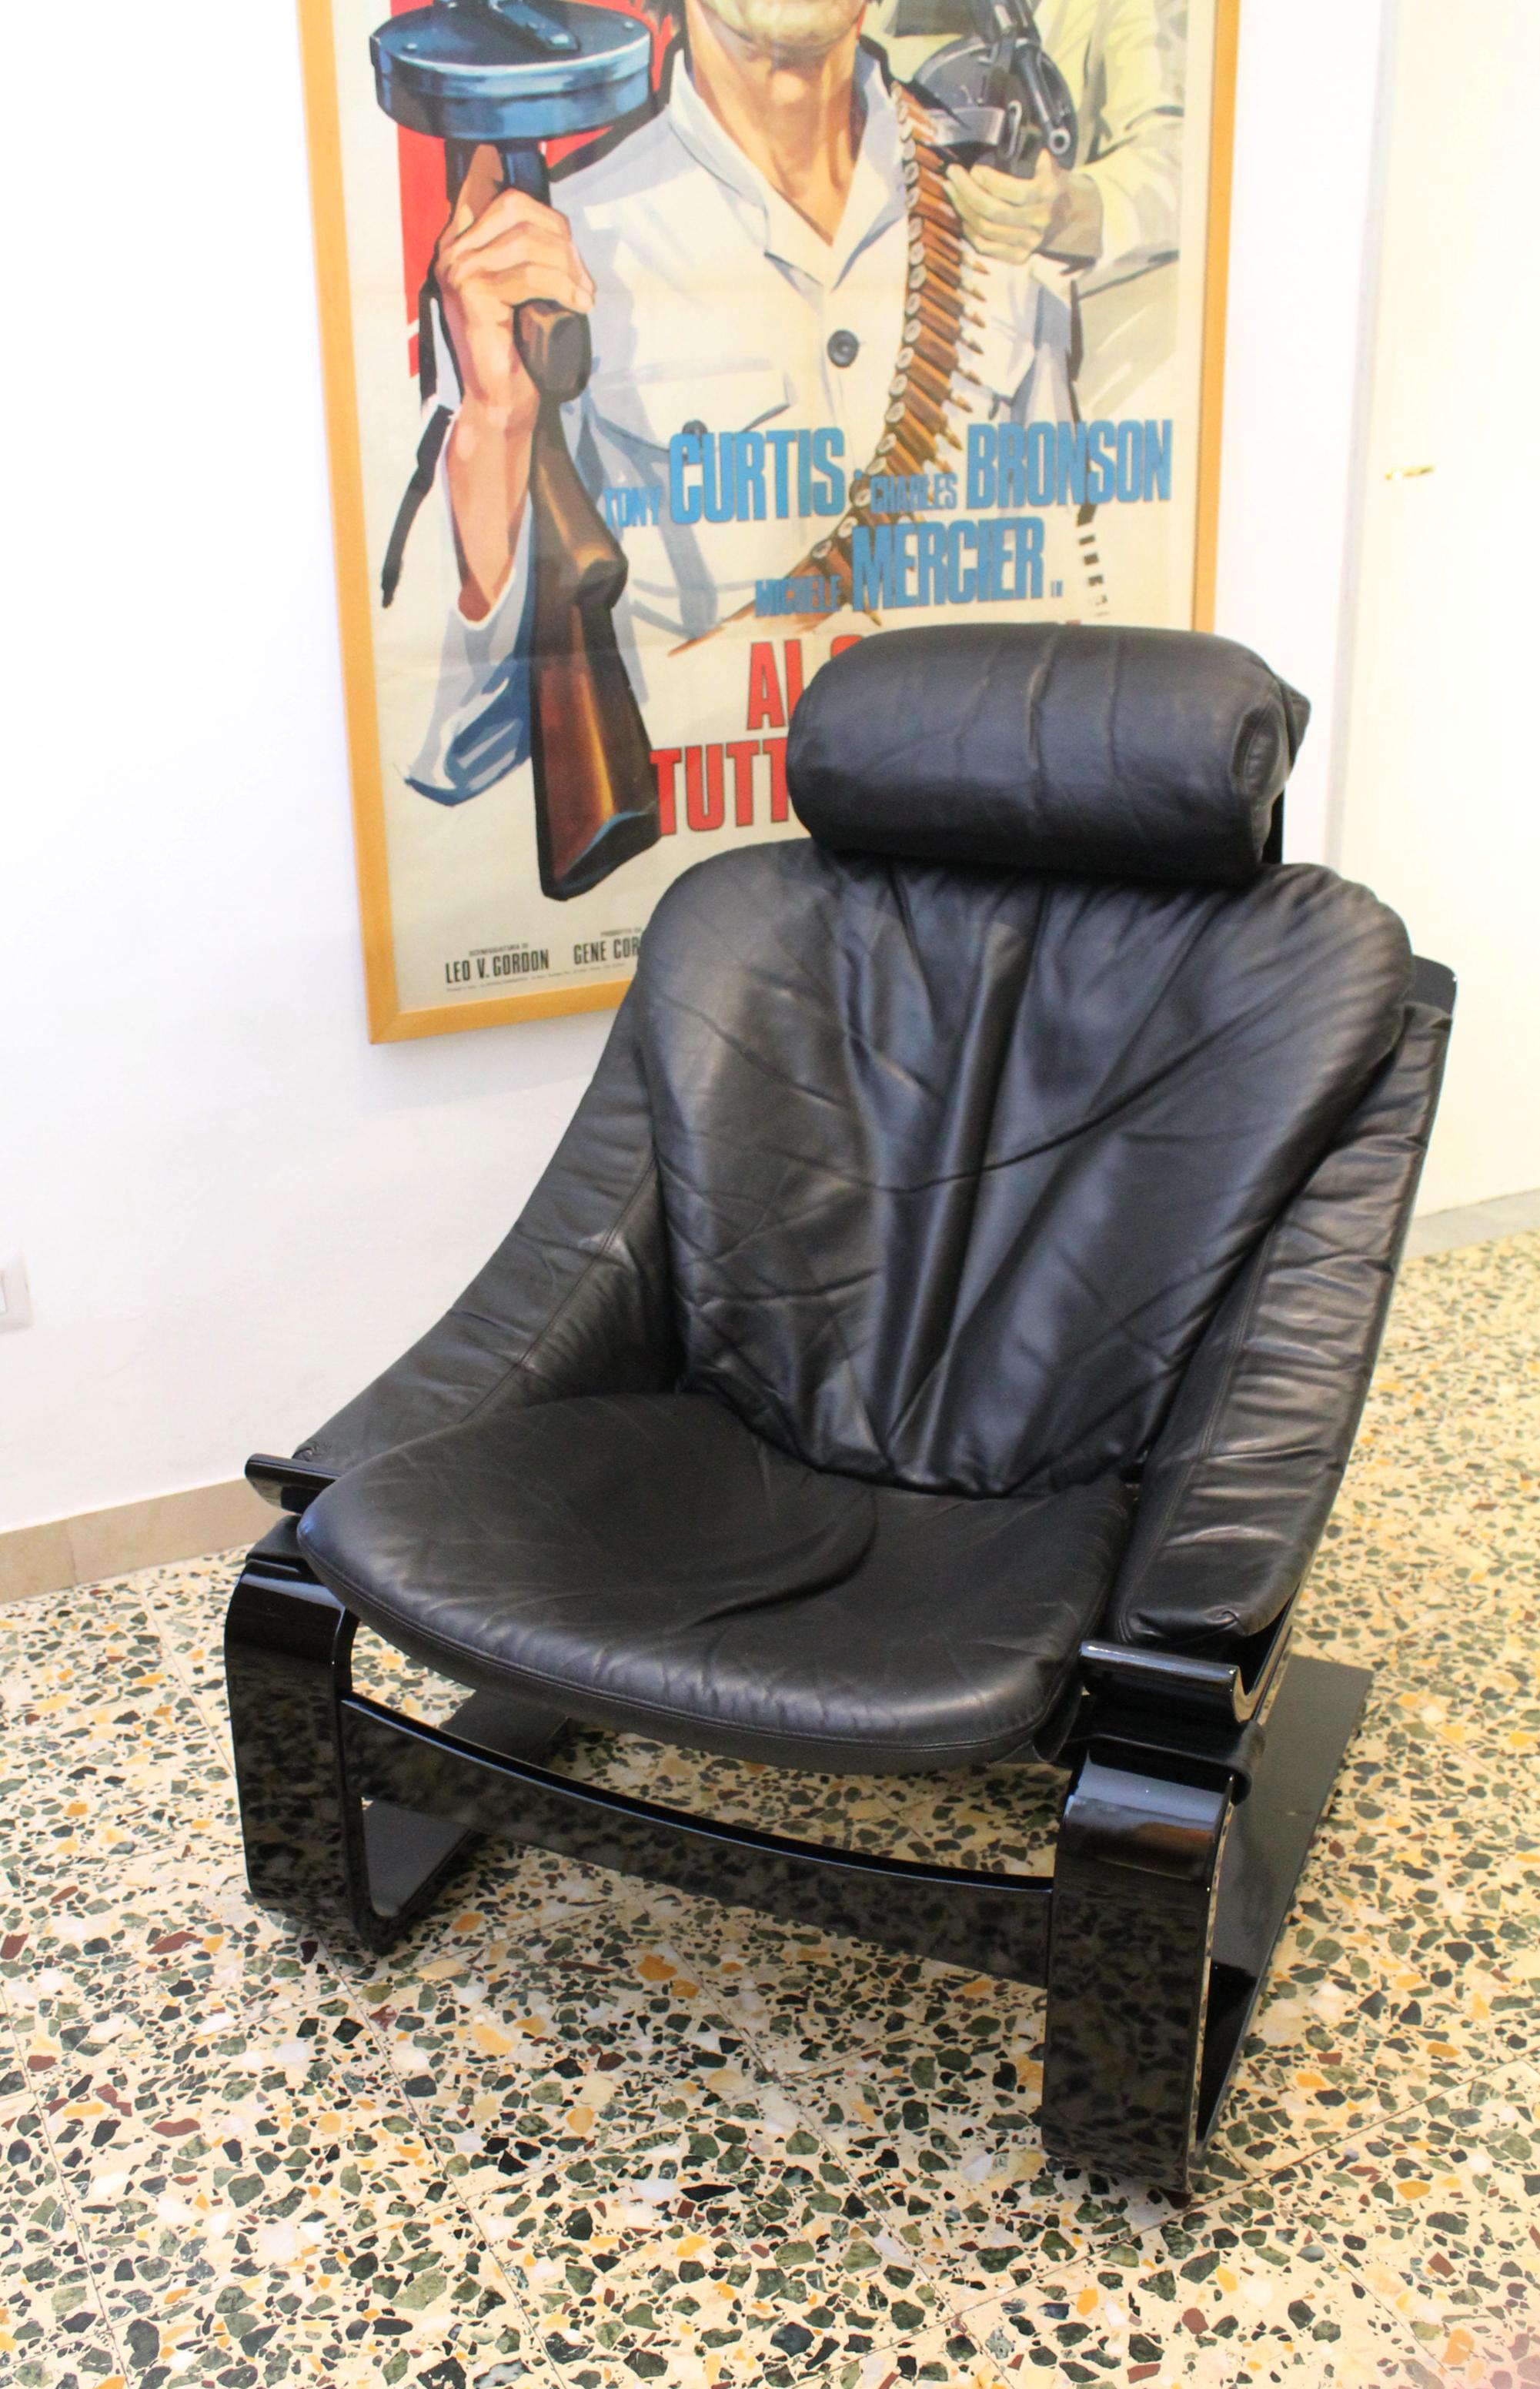 Design/One suédois des années 1970 par Ake Fribyter  Chaise longue Kroken. Sellerie d'origine en cuir noir  Appui-tête amovible et siège avec dossier, appui-tête réglable. Fabriqué par la marque suédoise Nelo dans les années 1970.

Cherchez-vous une